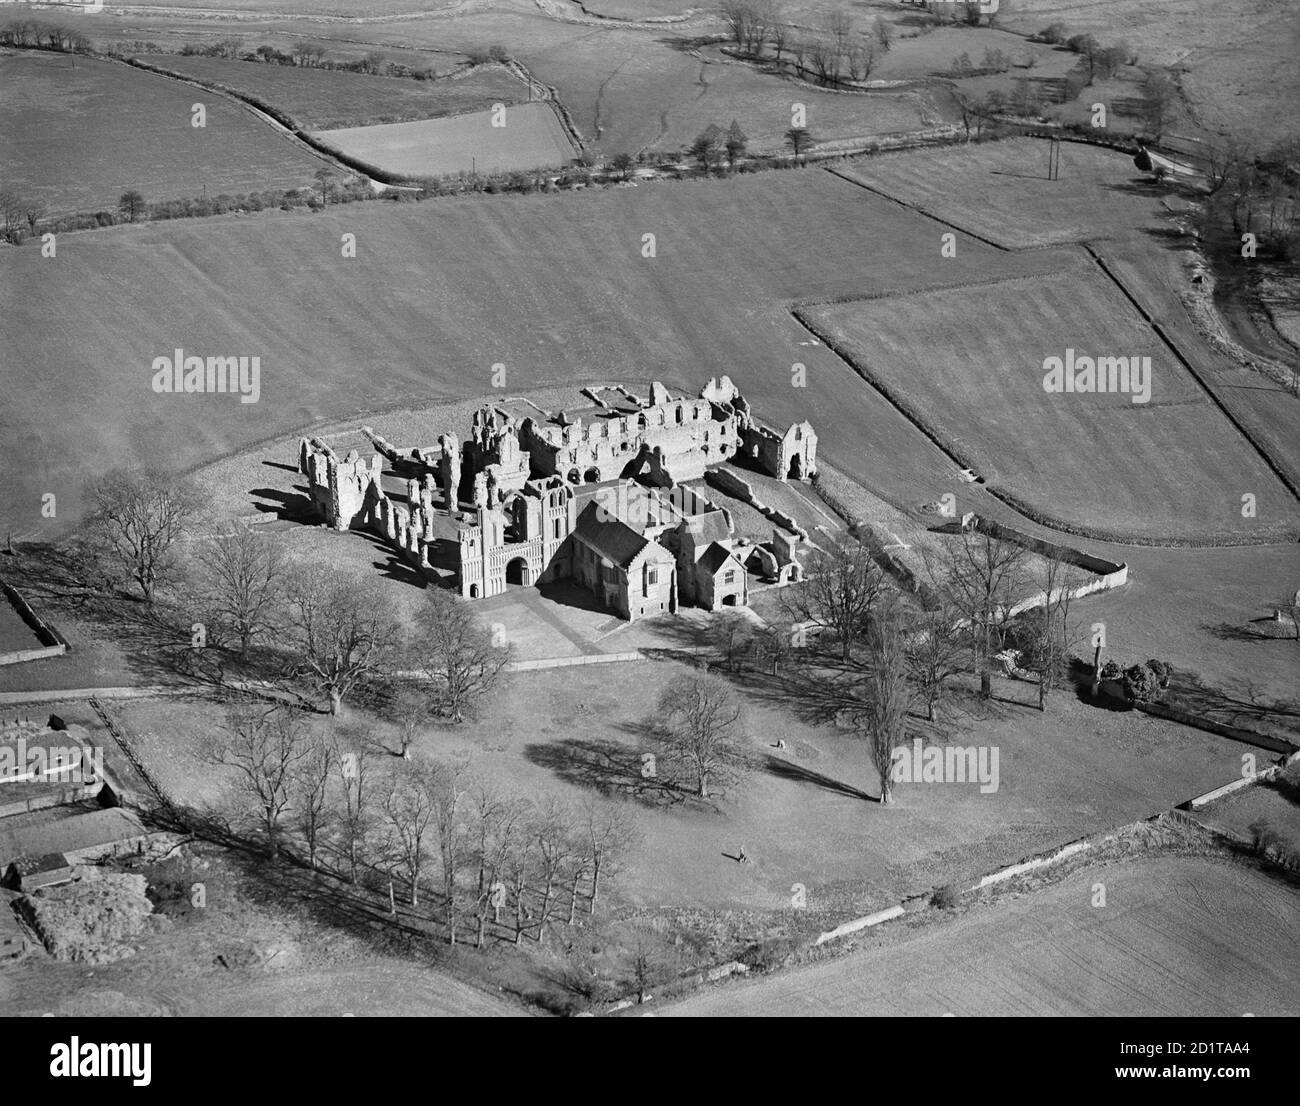 CASTLE ACRE PRIORAT, NORFOLK. Luftaufnahme der Ruinen des Priorats. Fotografiert von Aeropictorial im April 1946. Aerofilms Collection (siehe Links). Stockfoto